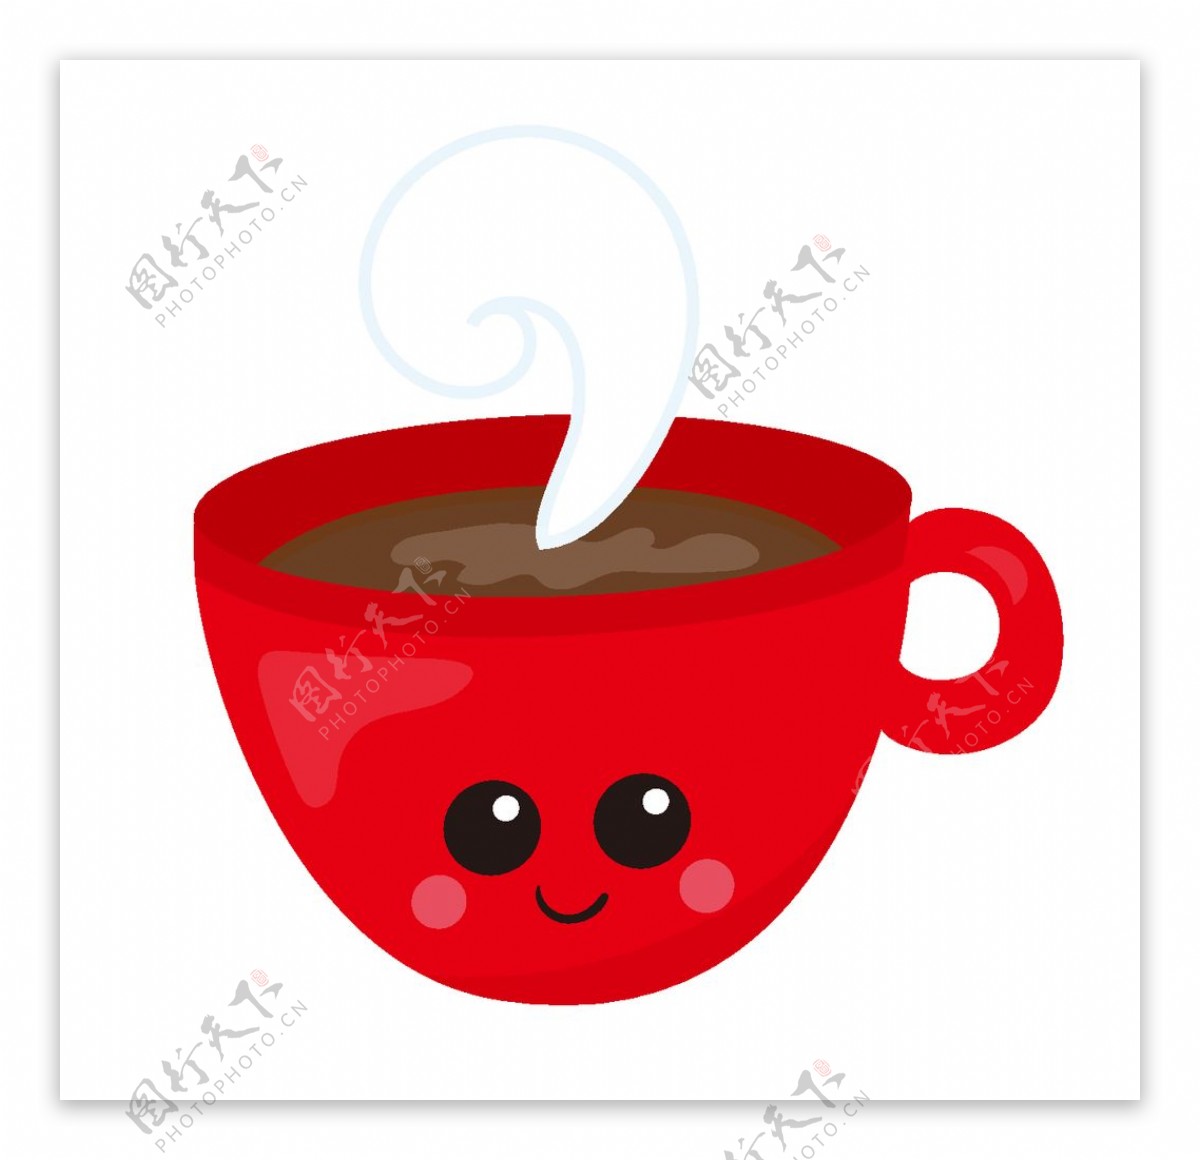 咖啡杯卡通形象AI矢量图设计